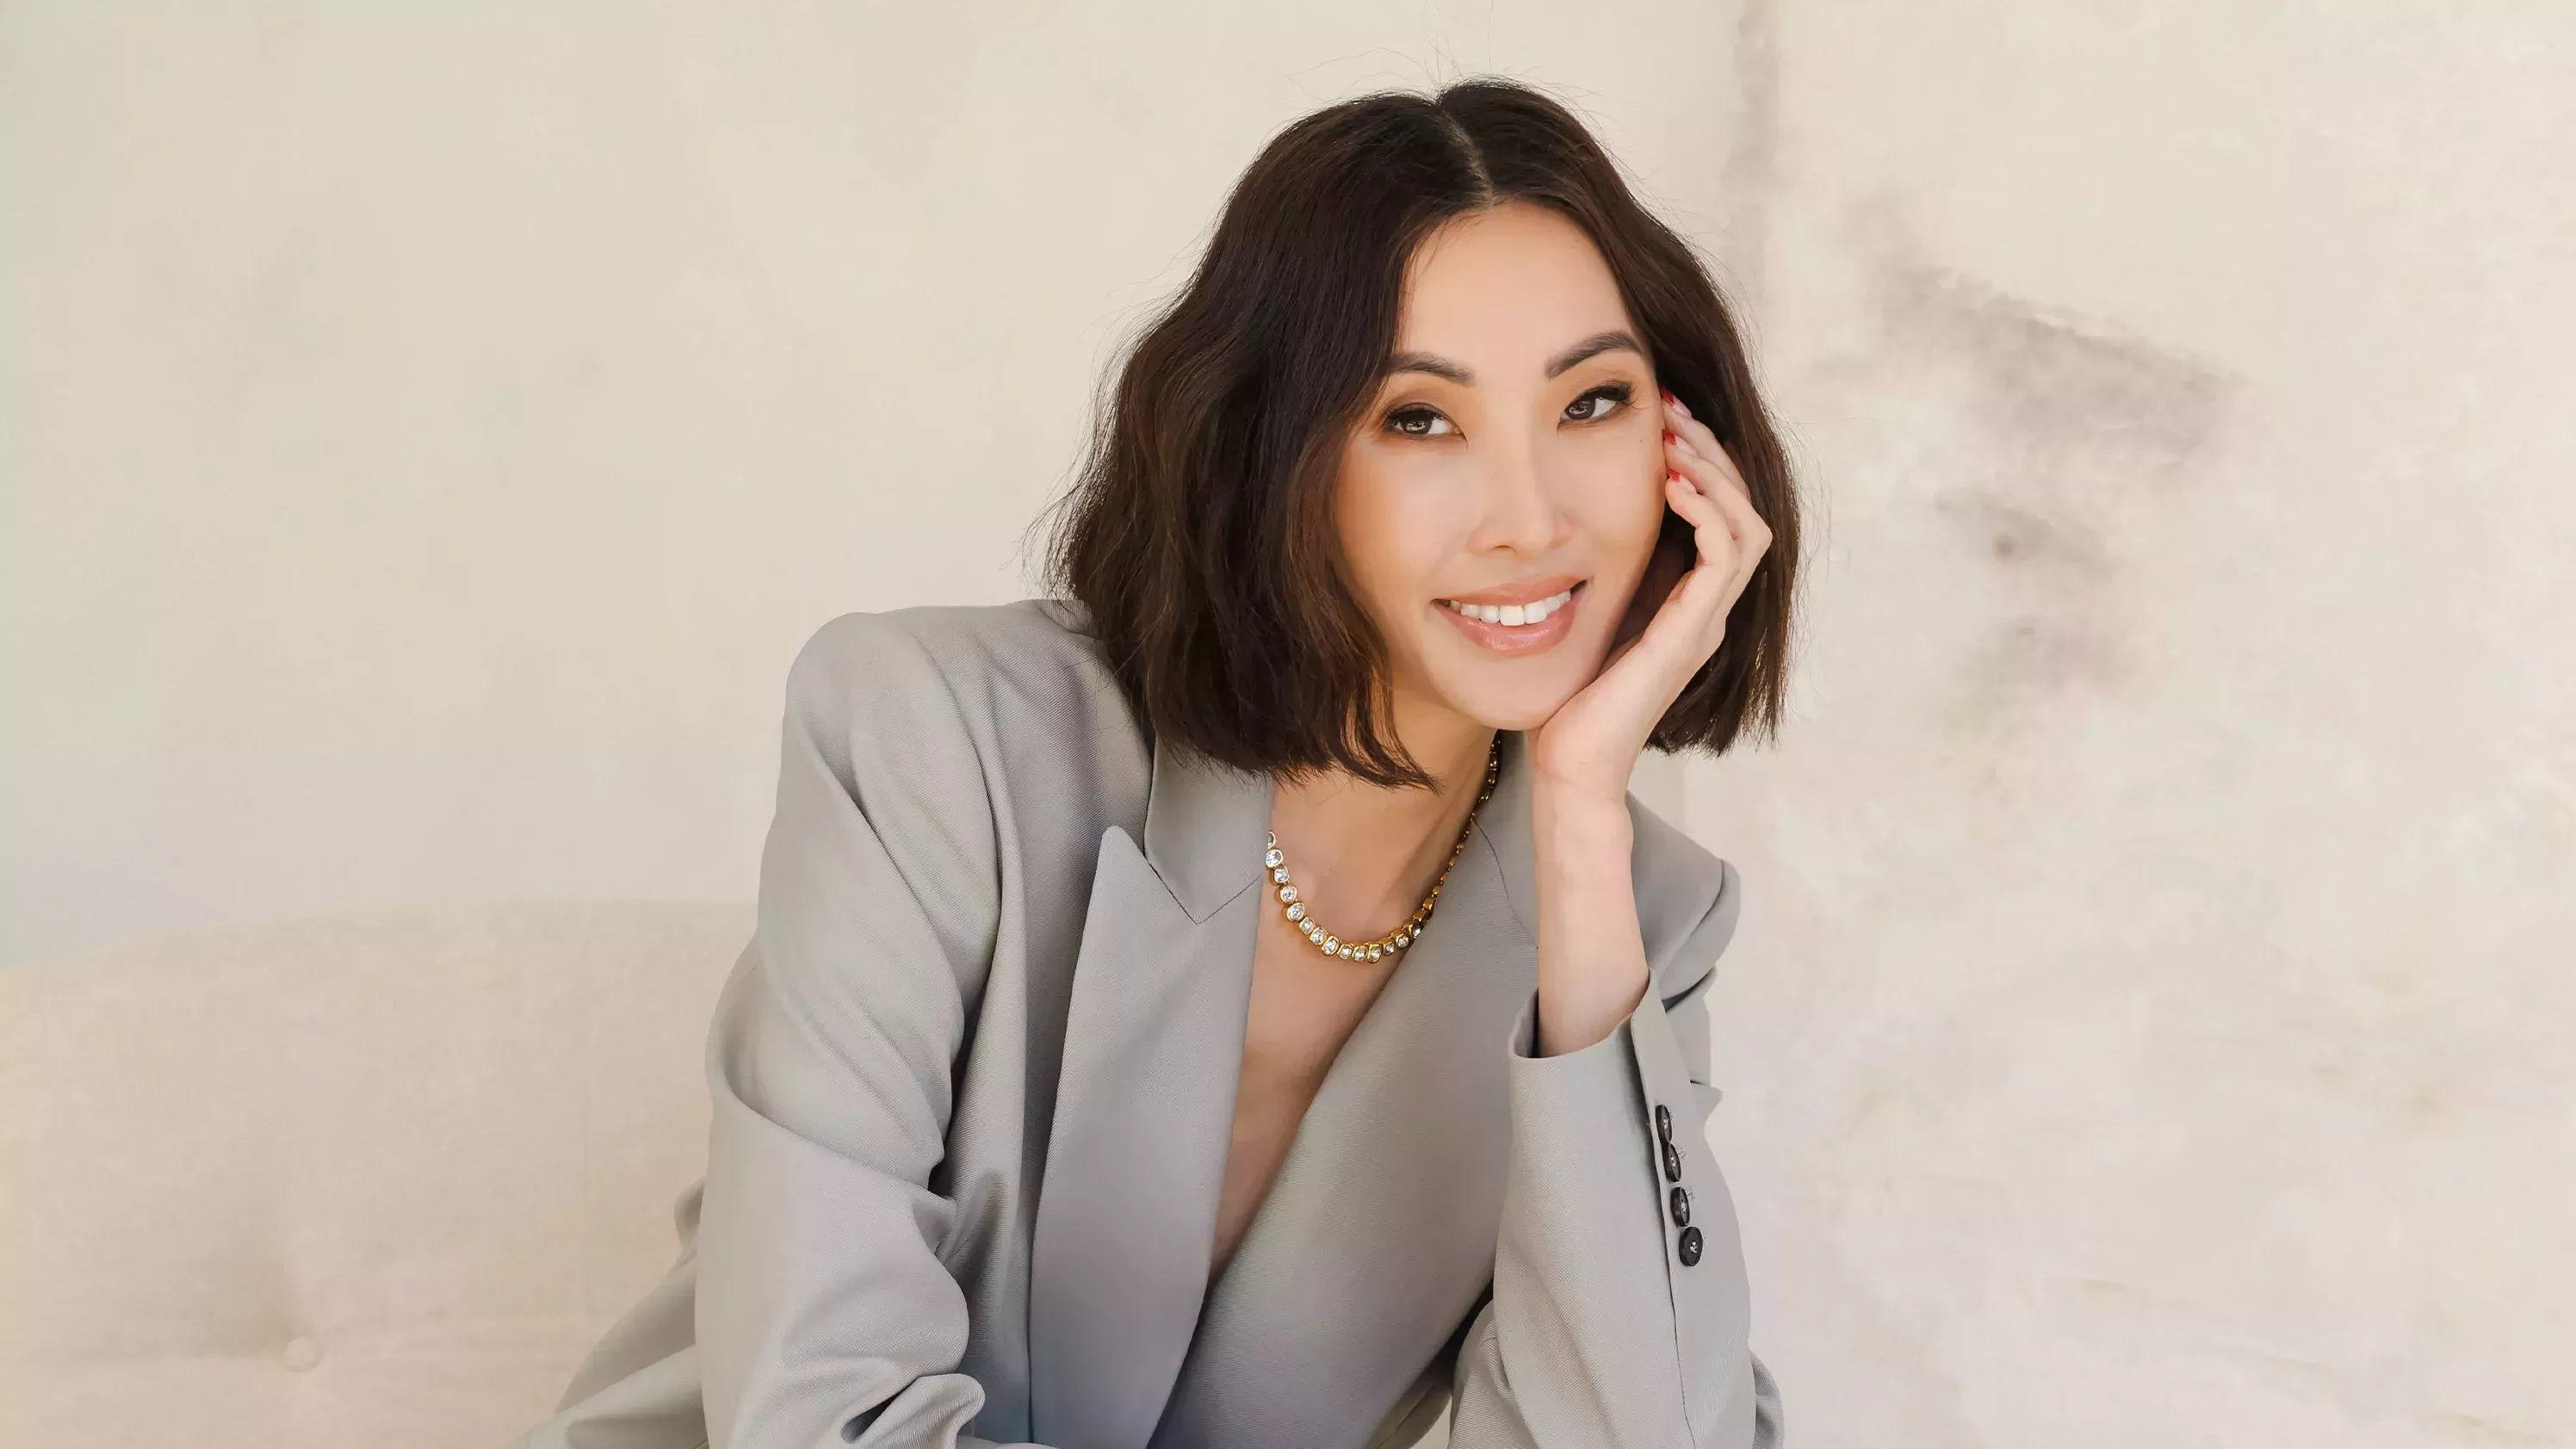 Chriselle Lim comparte los 11 productos de belleza sin los que no puede vivir